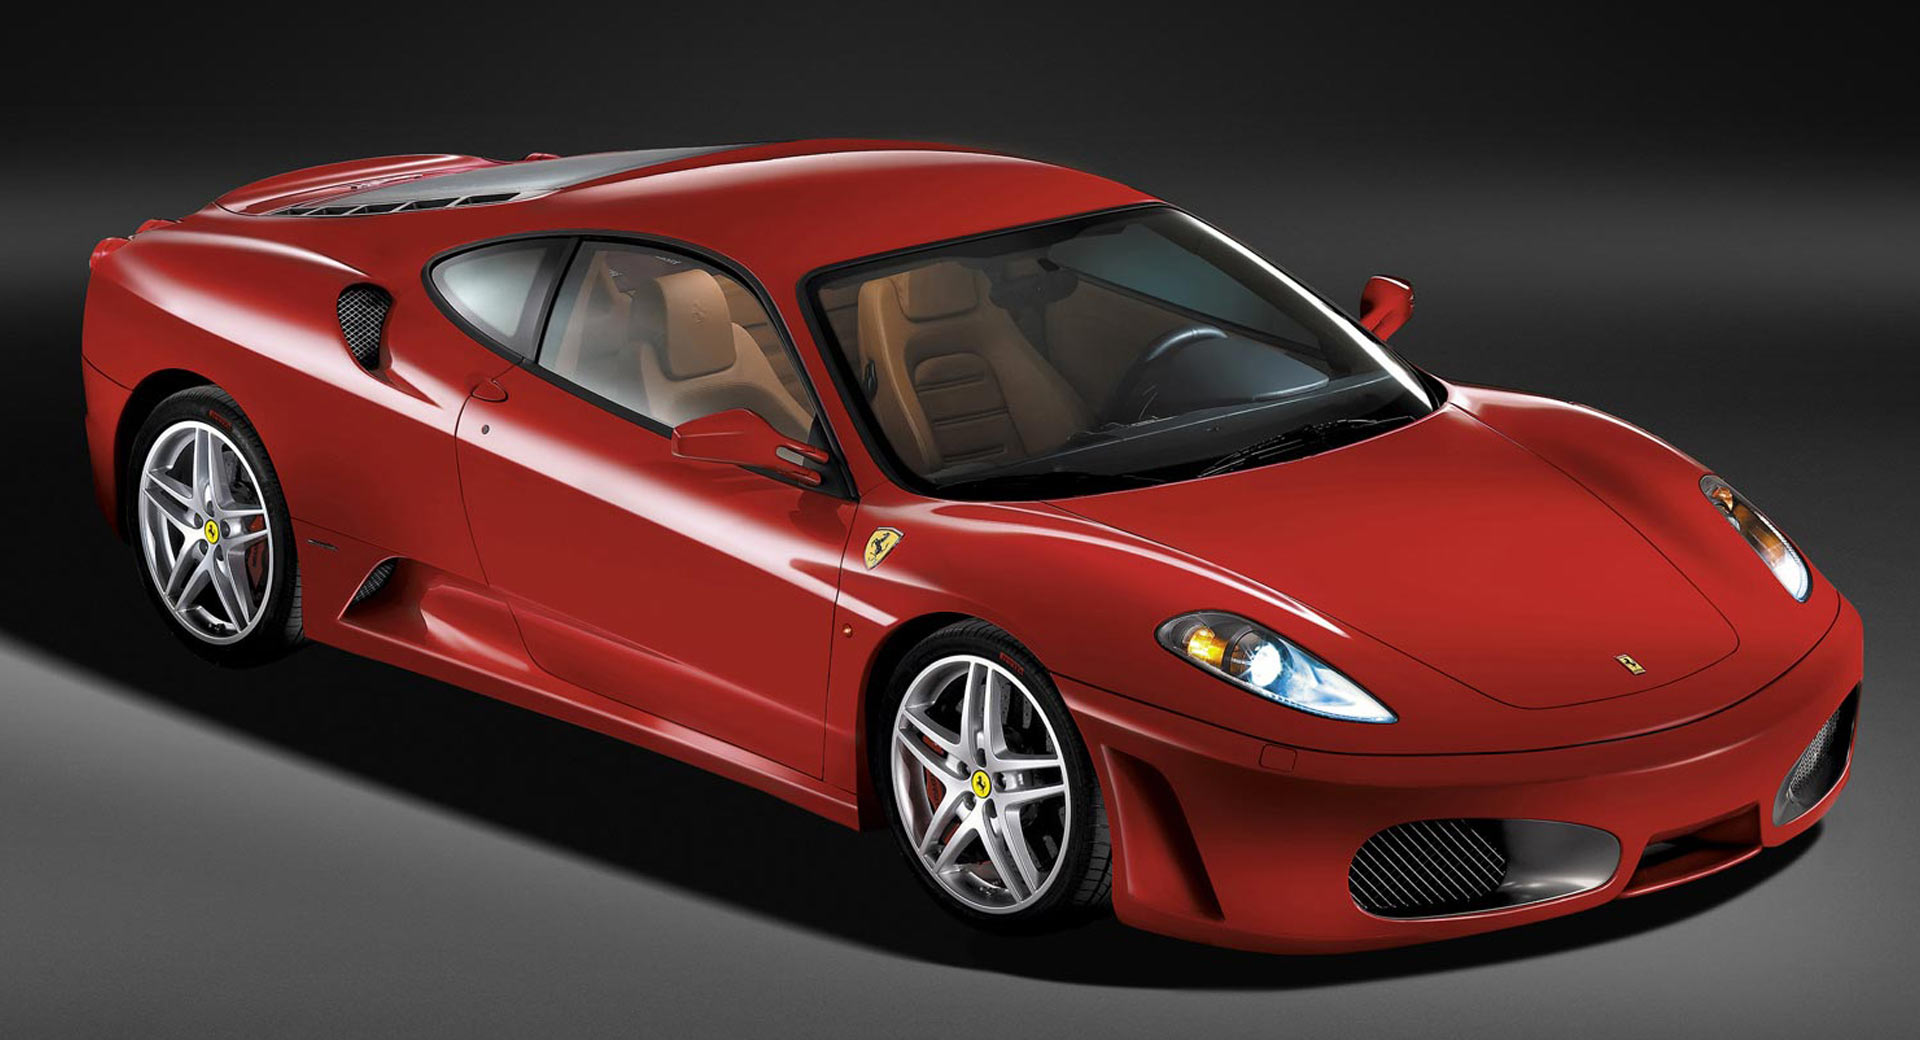 Tự nhiên thành trend, Ferrari số sàn đời cổ tăng giá cao ngất ngưởng, có xe đắt gấp đôi, hốt bạc cho ai đầu cơ để bán - Ảnh 3.